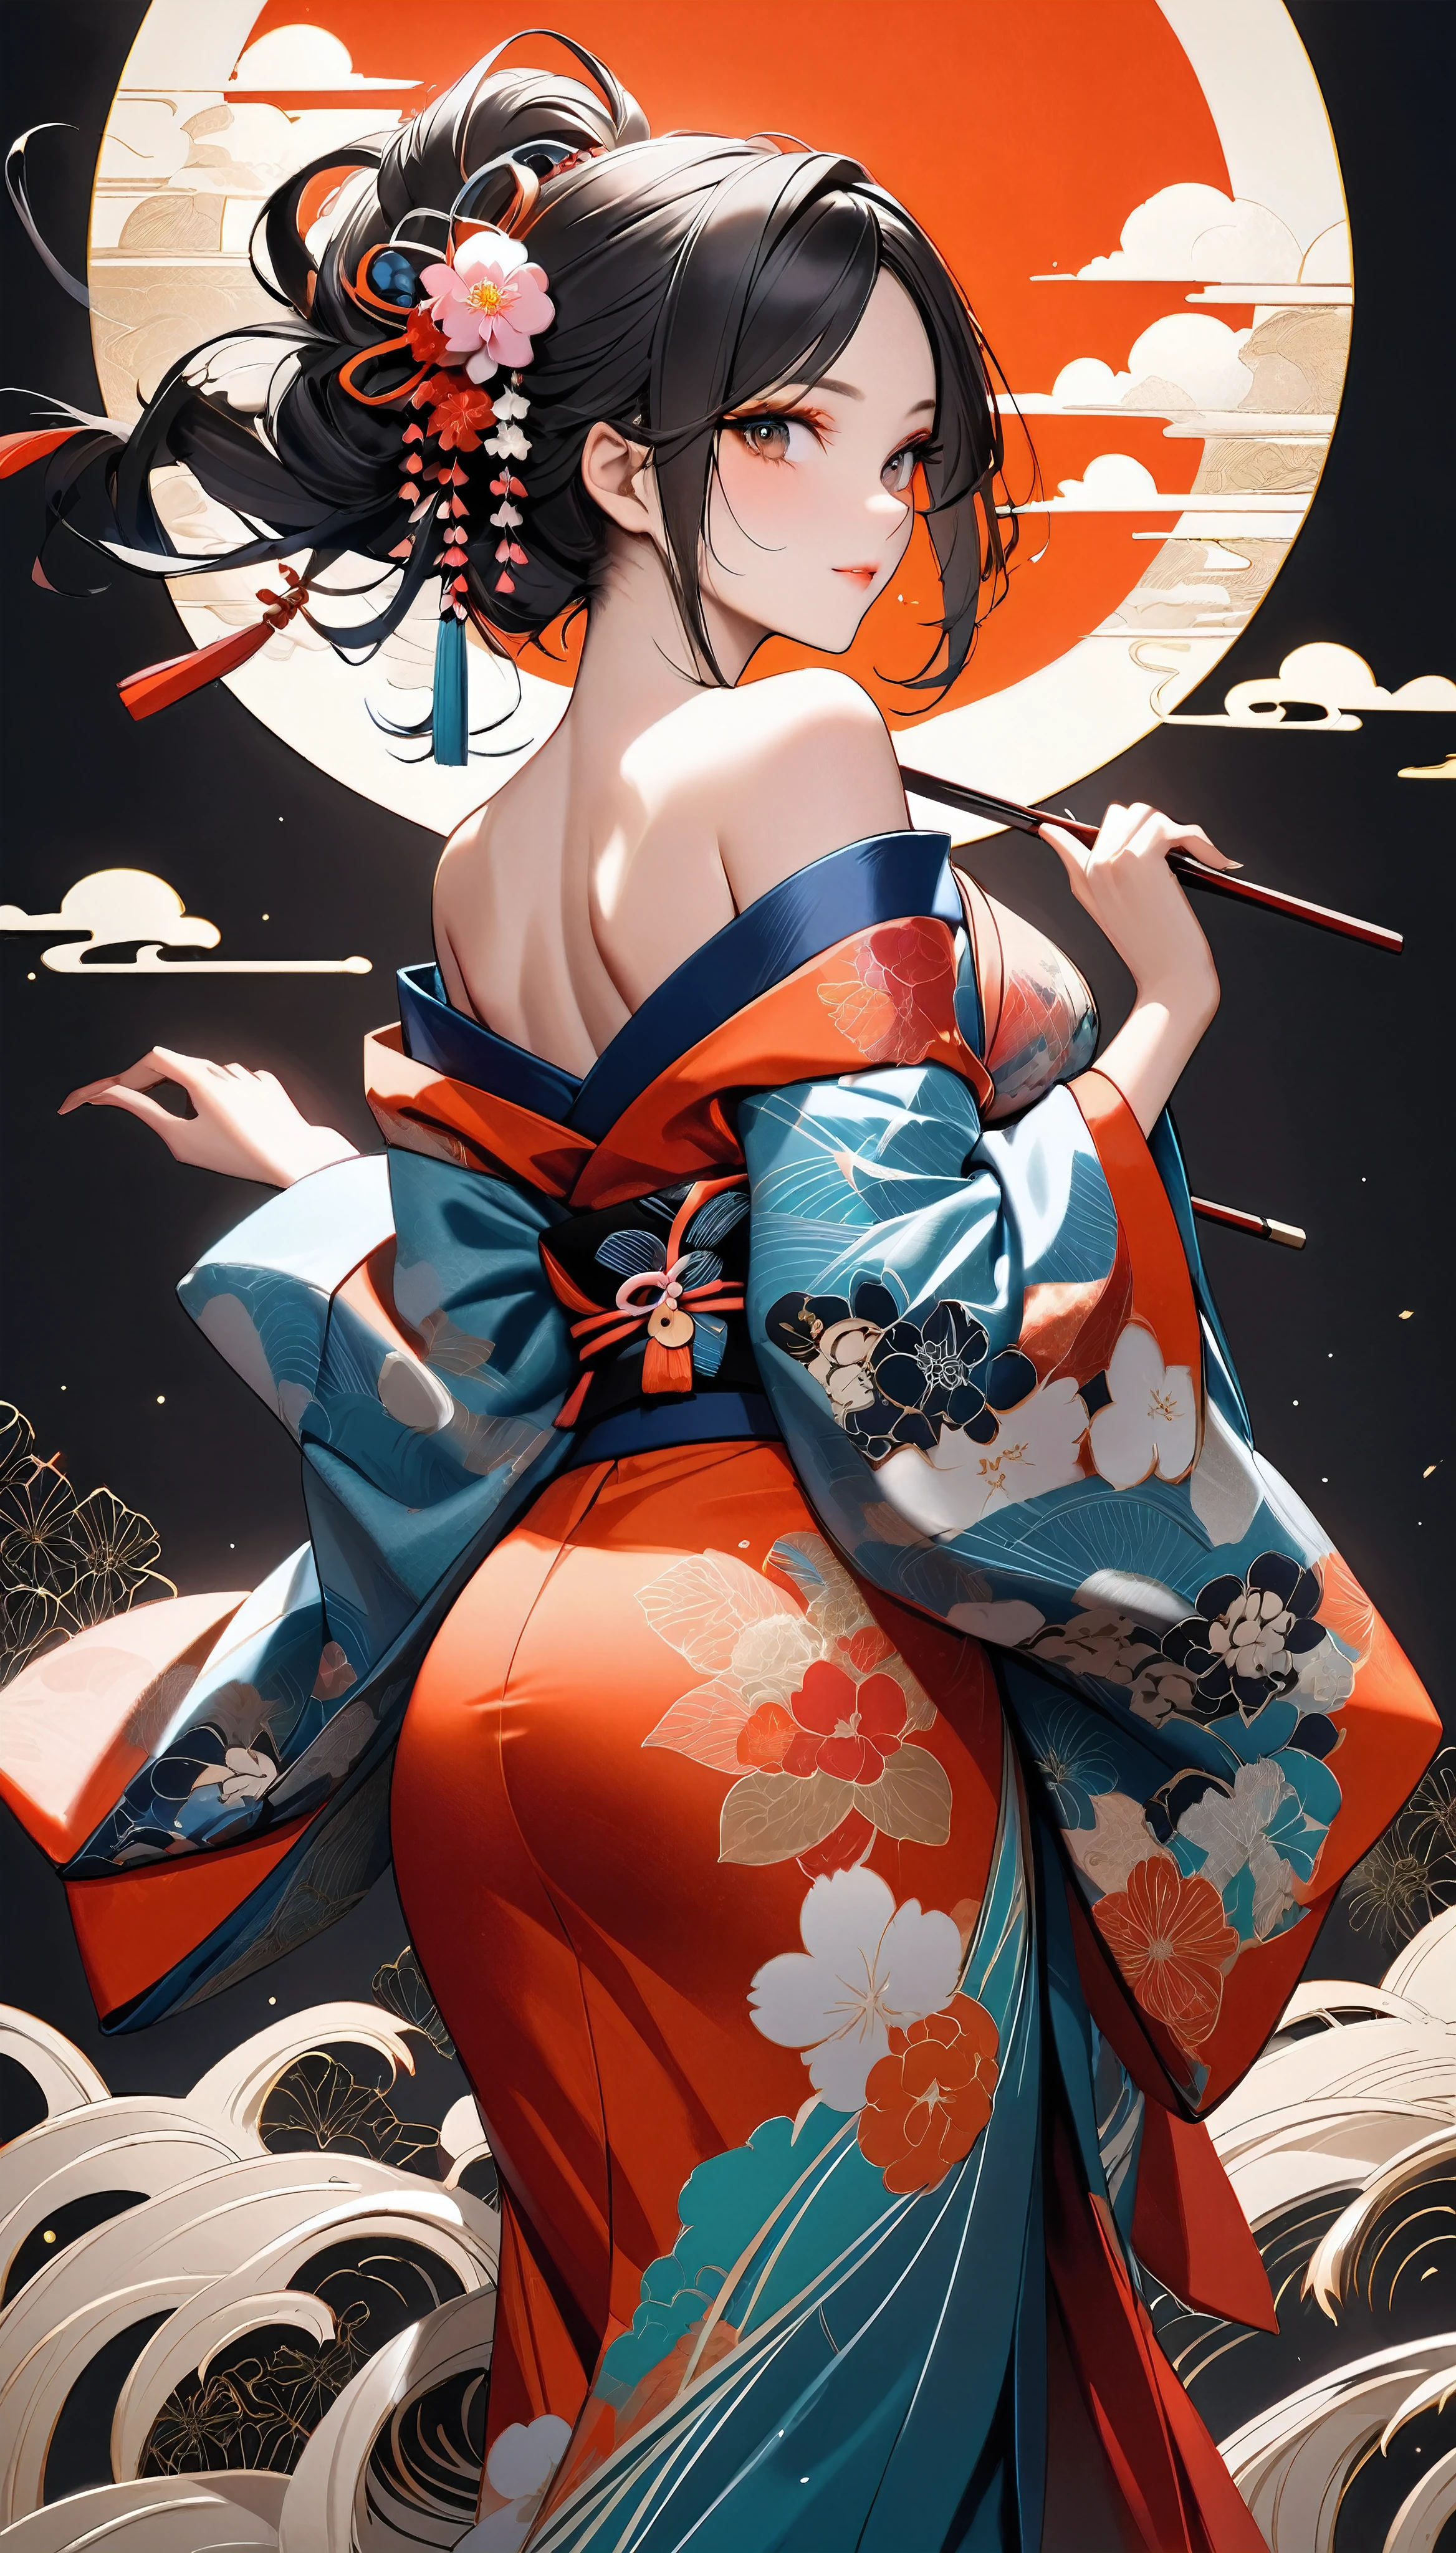 Sexy back, Mujer atractiva en kimono japonés tradicional, alone, Quimono sin tirantes y con hombros descubiertos, Cabello negro castaño oscuro, Textura de piel detallada y realista., Tonos de piel atractivos de alto contraste., Maquillaje suave y cautivador, BREAK Kimono japonés de lujo, Textura de seda detallada, Brillo de seda, Fino y flexible, Colores vibrantes, Tensión de la piel que acentúa el escote., BREAK Preciosos patrones en kimonos, Coloración detallada e intrincada., Alto contraste estético, piel saludable, BREAK Una composición atrevida que seduce al espectador, Estética absurda, Disparo de cuerpo entero BREAK, 